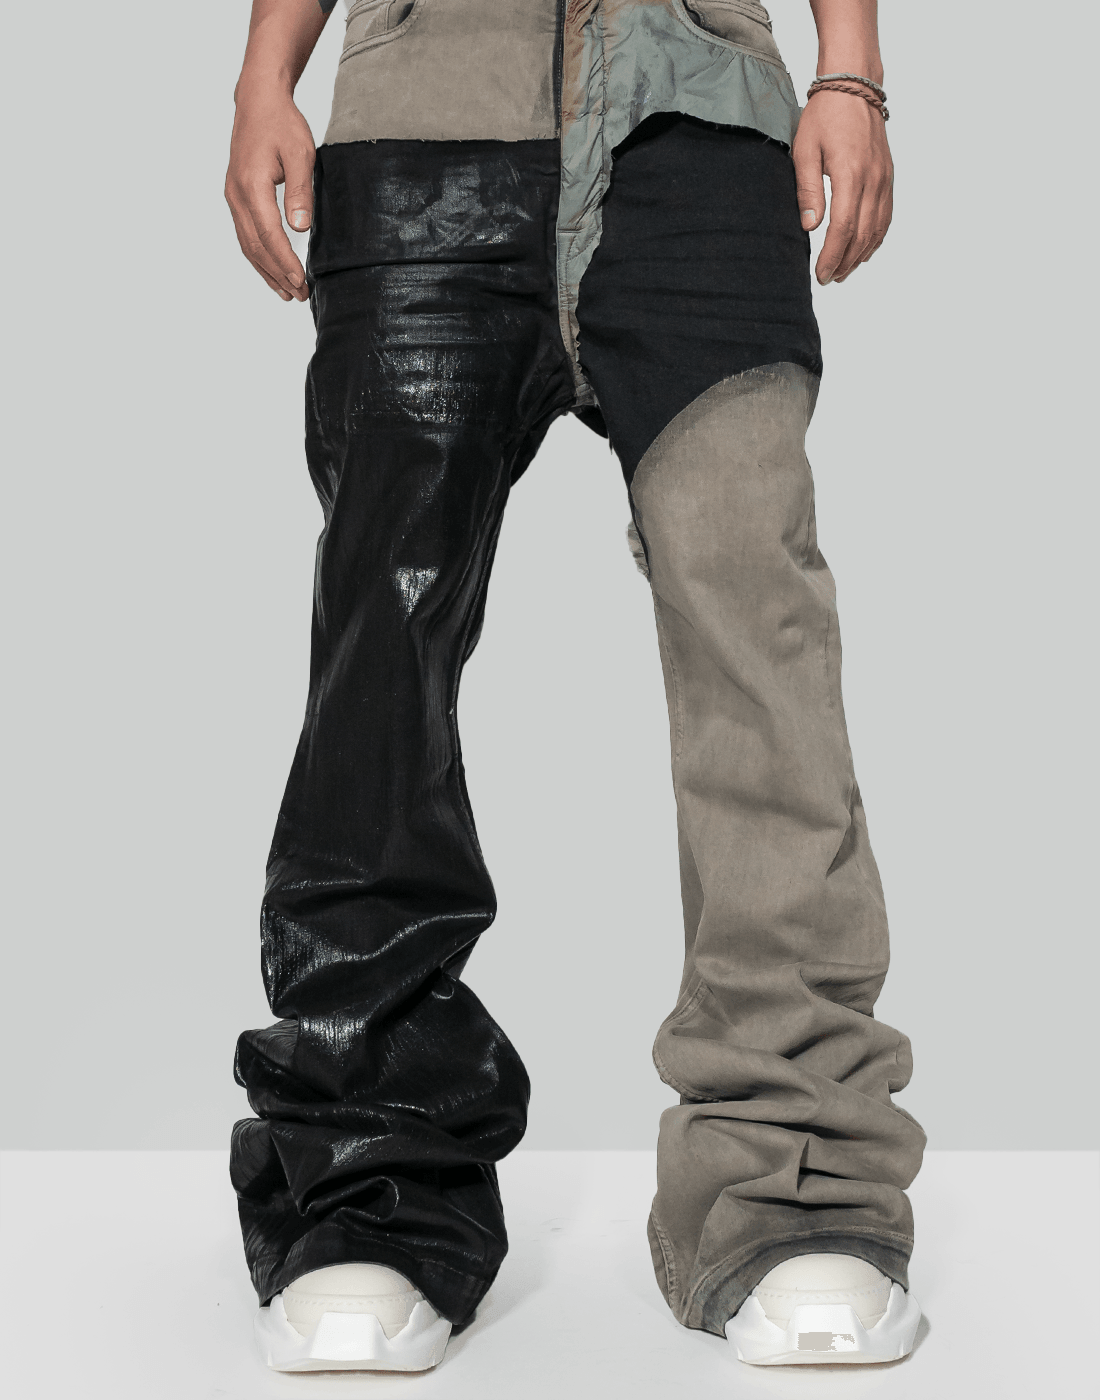 サイズ28ですRick Owens bolan bootscut pants - パンツ